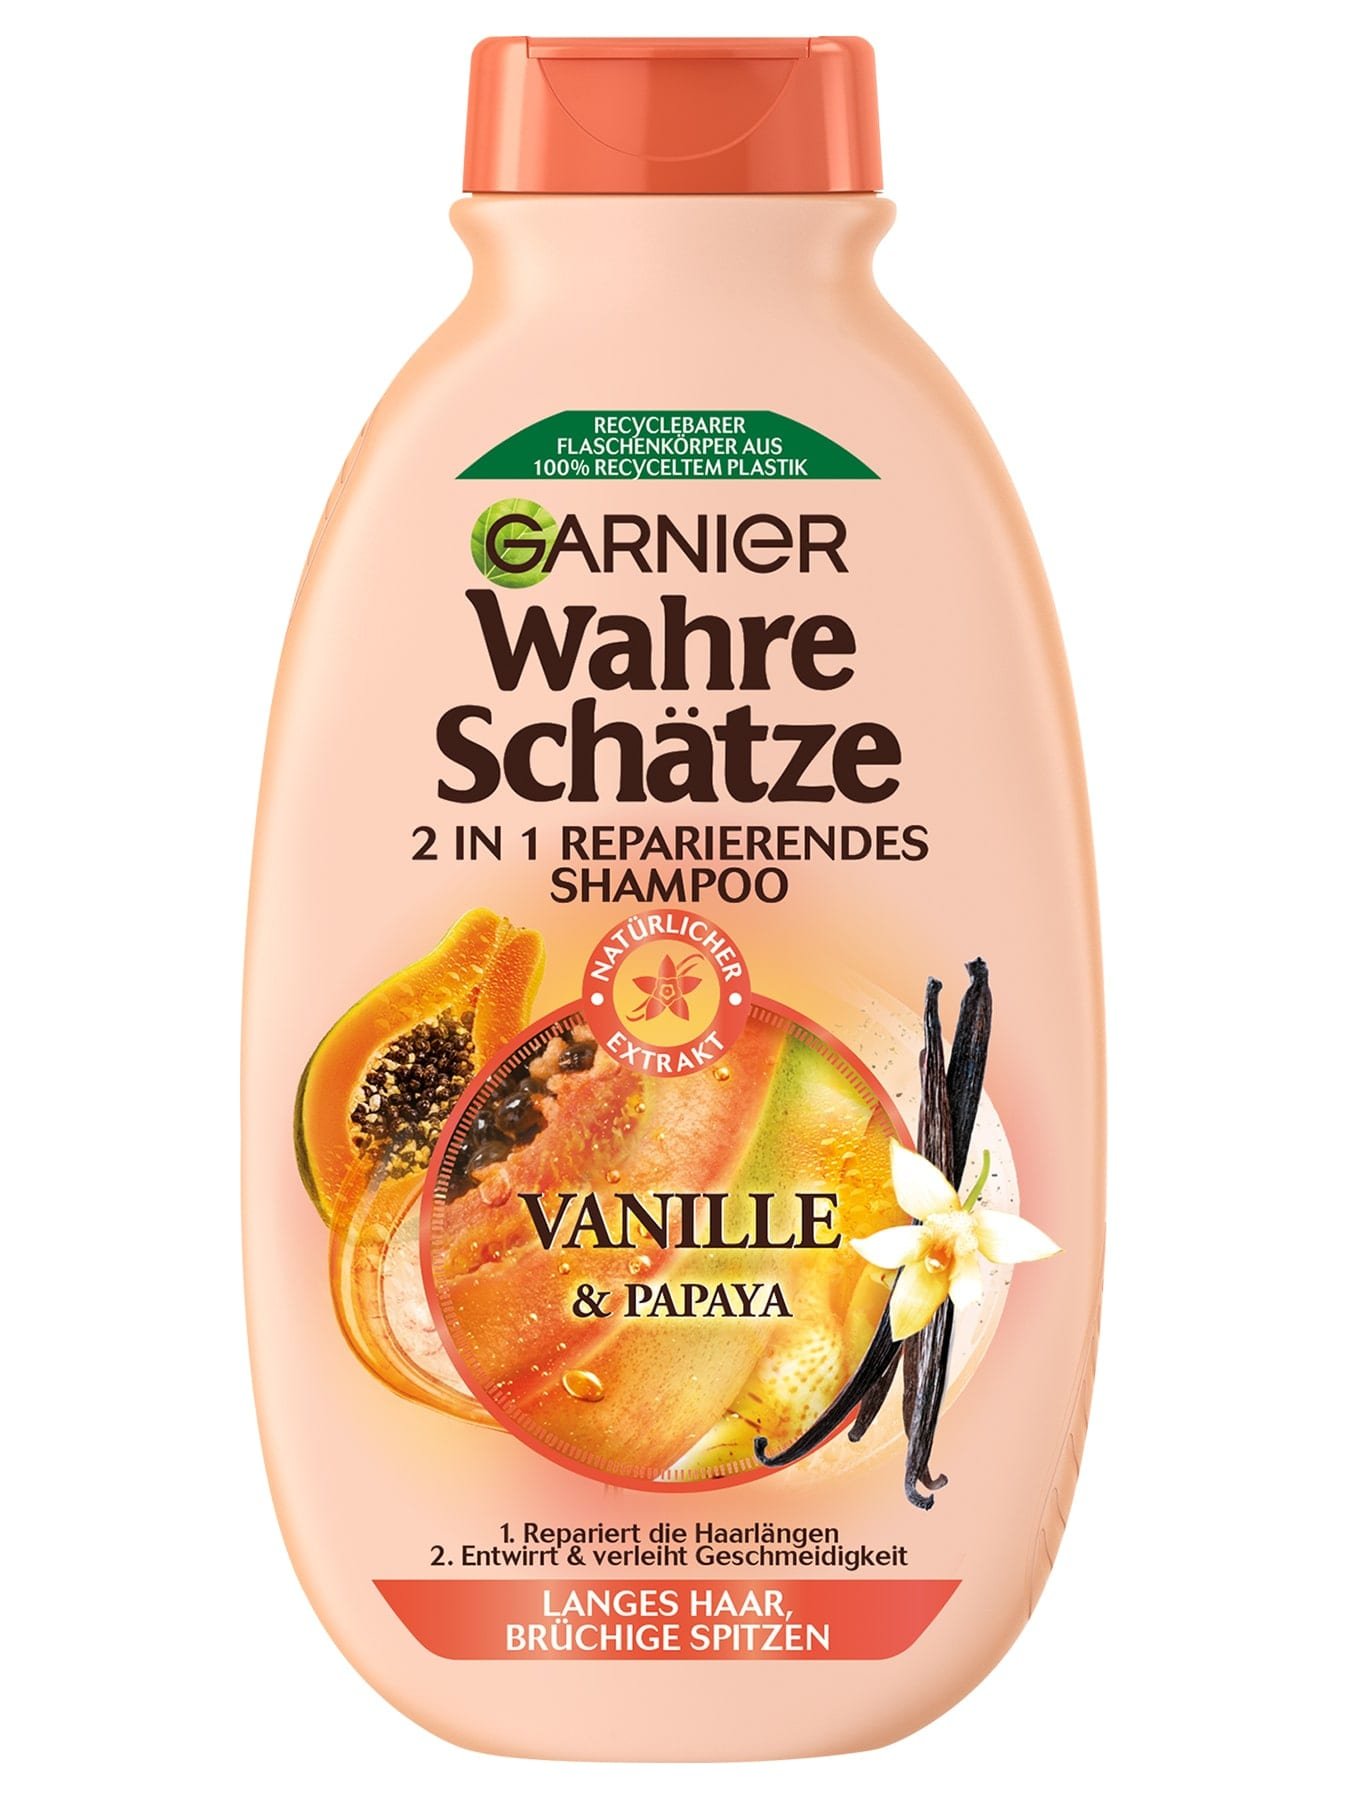 Wahre Schätze 2in1 Reparierendes Shampoo Vanille & Papaya - Produktabbildung